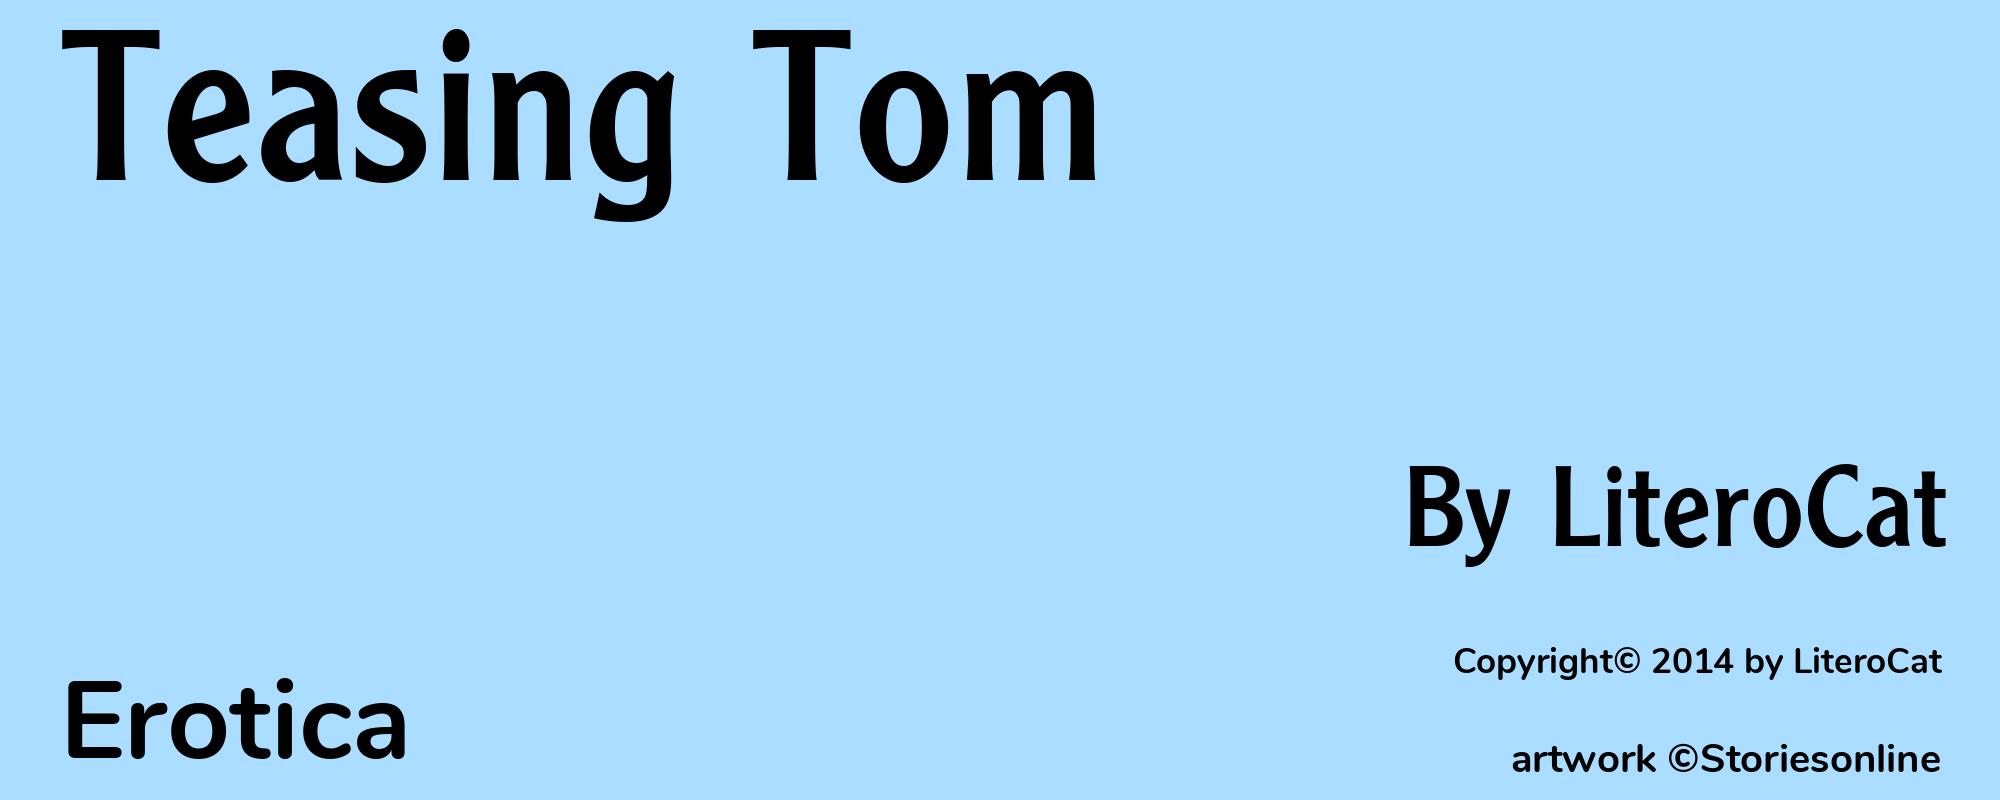 Teasing Tom - Cover